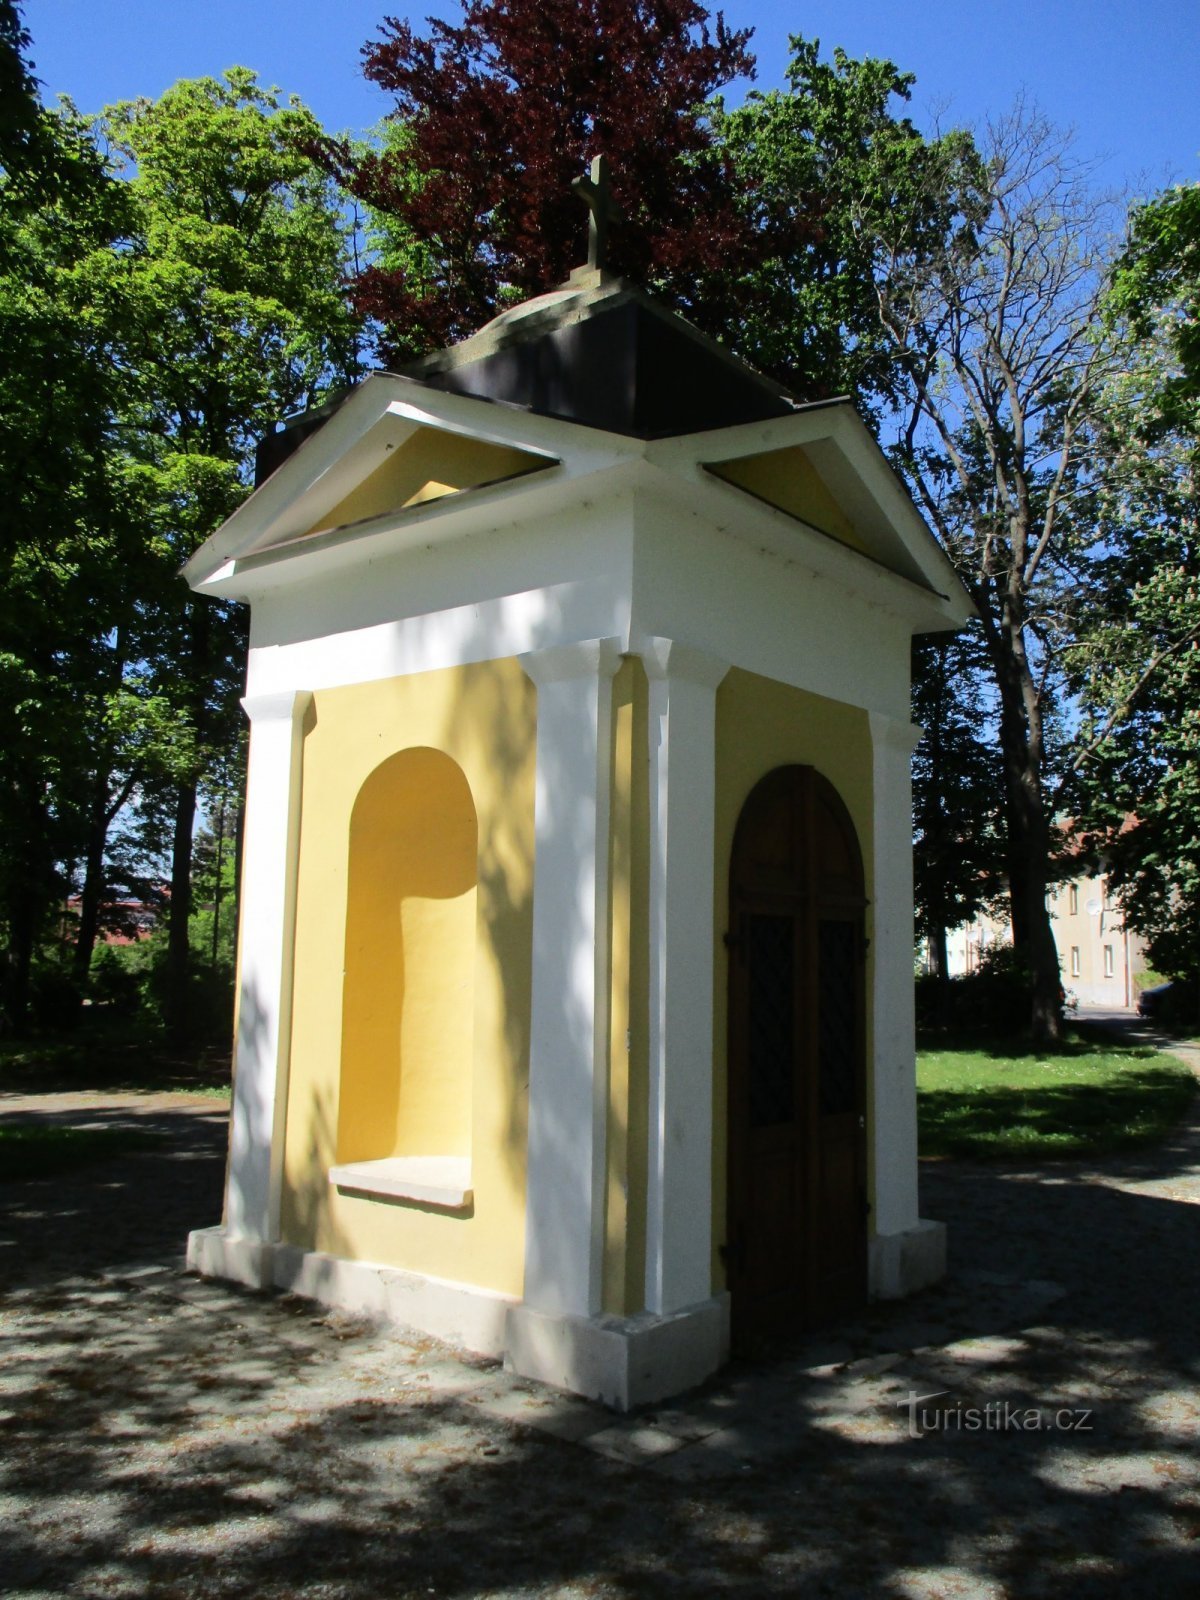 Capela din Archlebový sady (Dobruška, 18.5.2020)